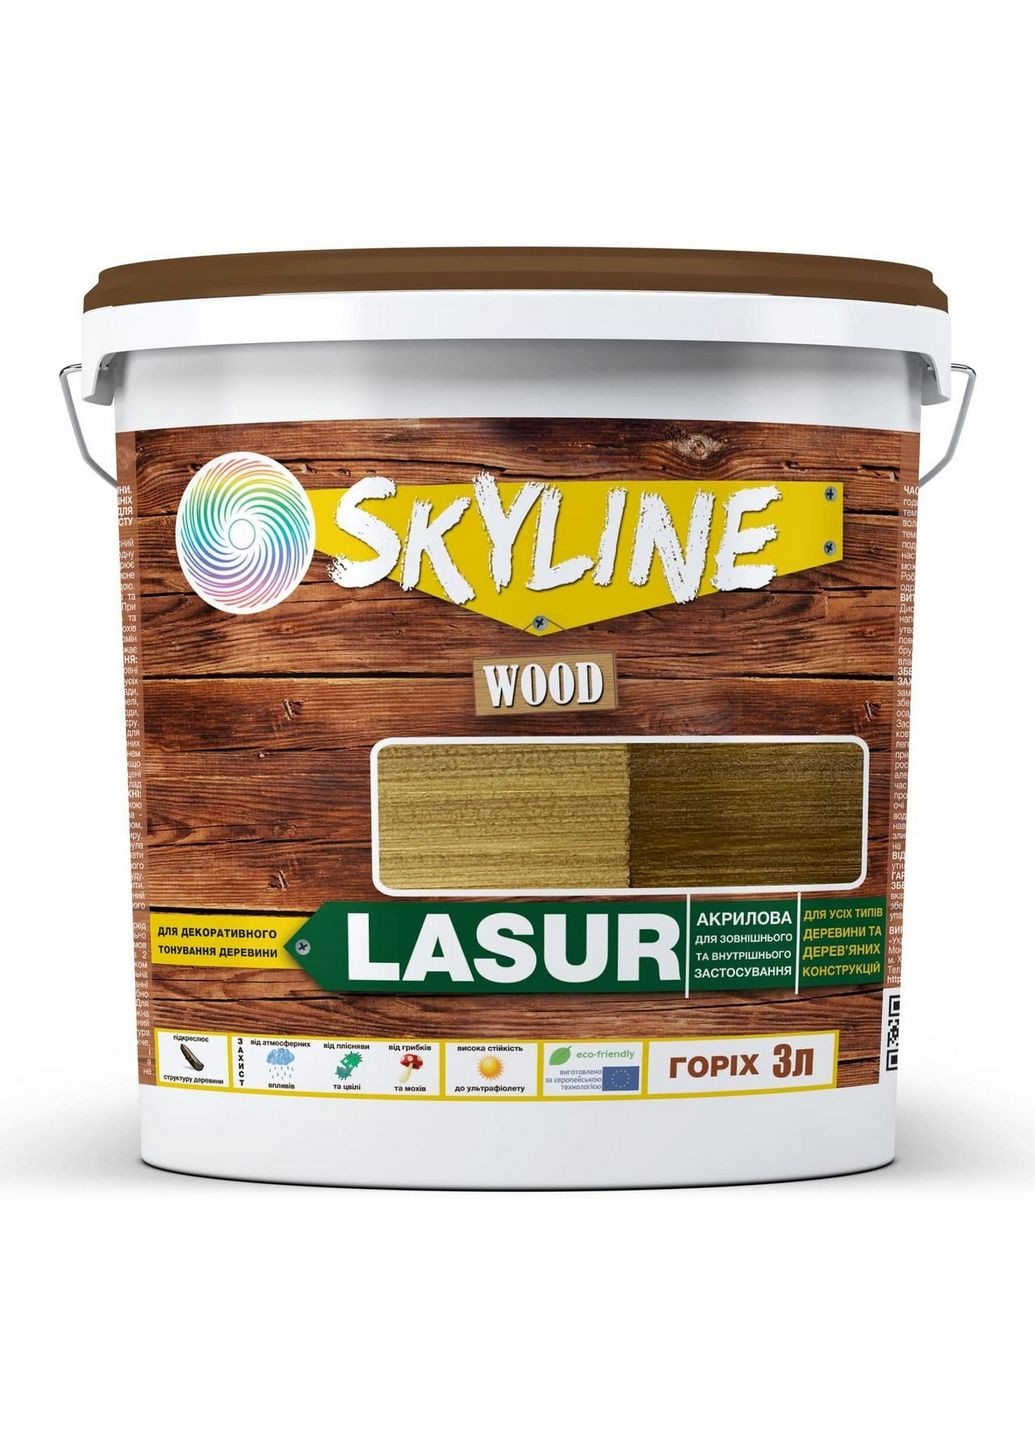 Декоративно-защитная лазурь для обработки дерева LASUR Wood 3 л SkyLine (283326377)